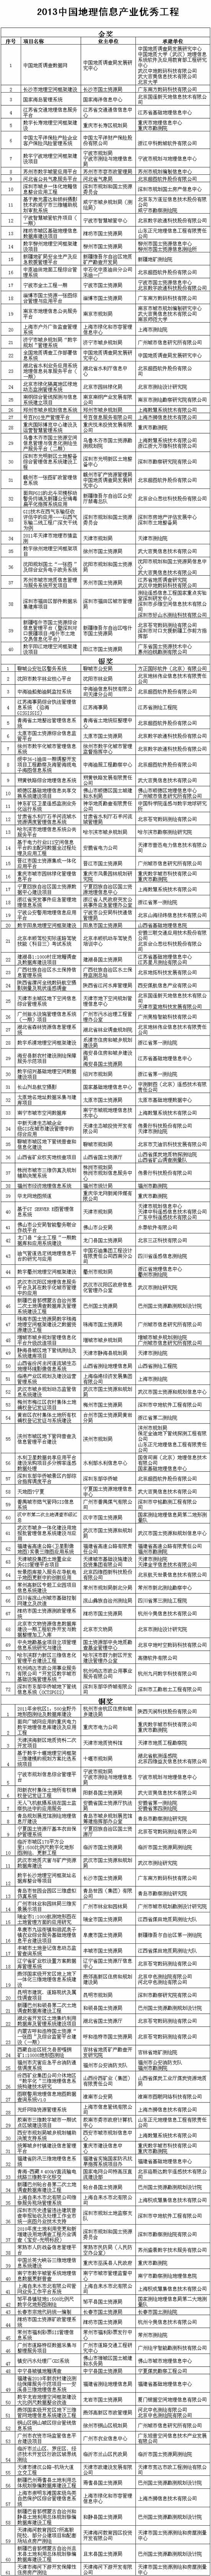 2013中国地理信息产业优秀工程公示